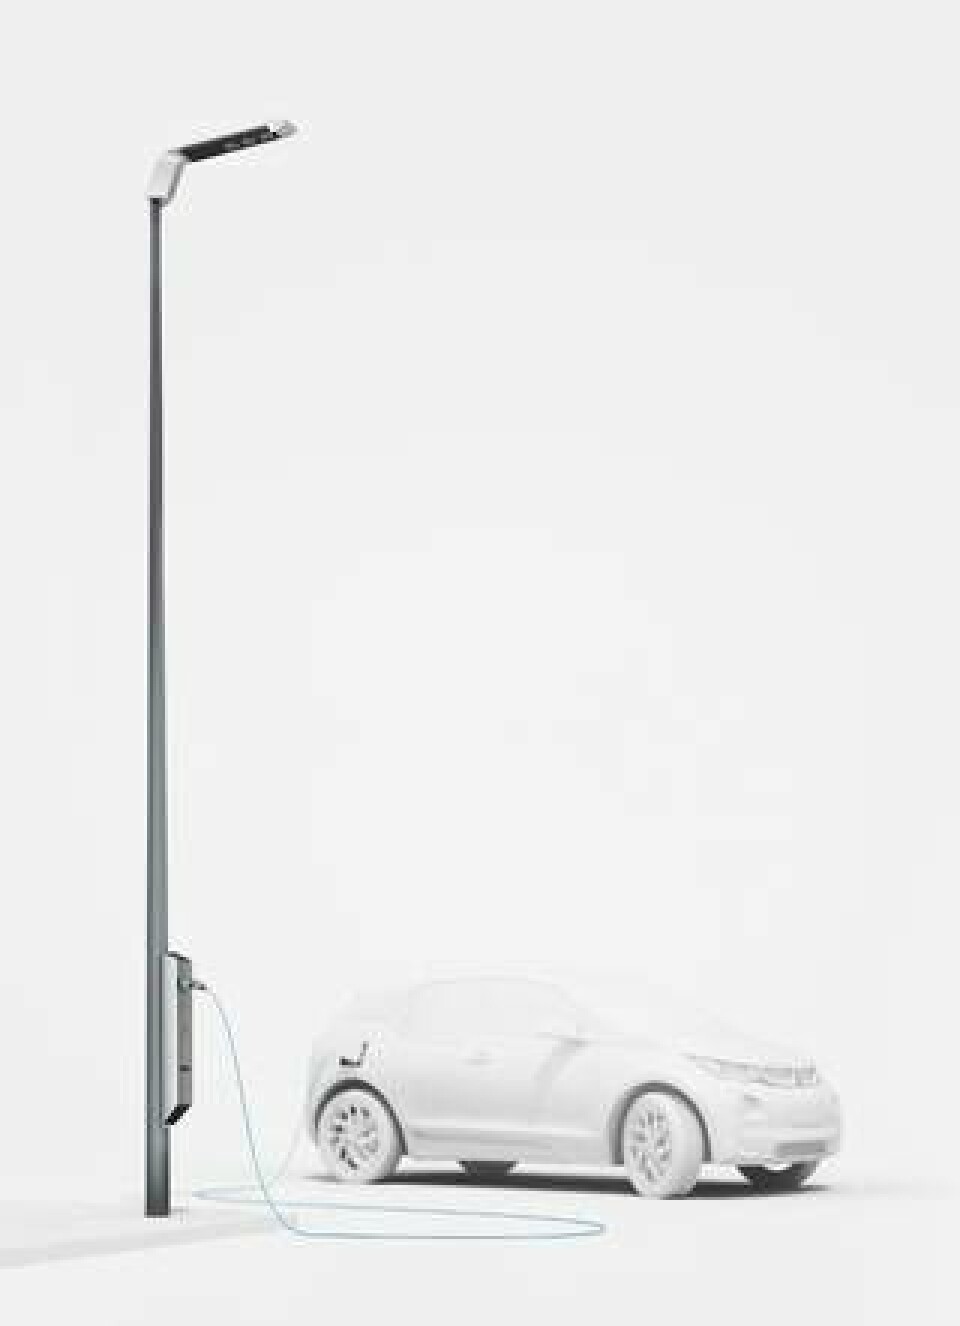 BMW vill byta ut vanliga lyktstolpar mot stolpar som både ger ljus och laddar elbilen.